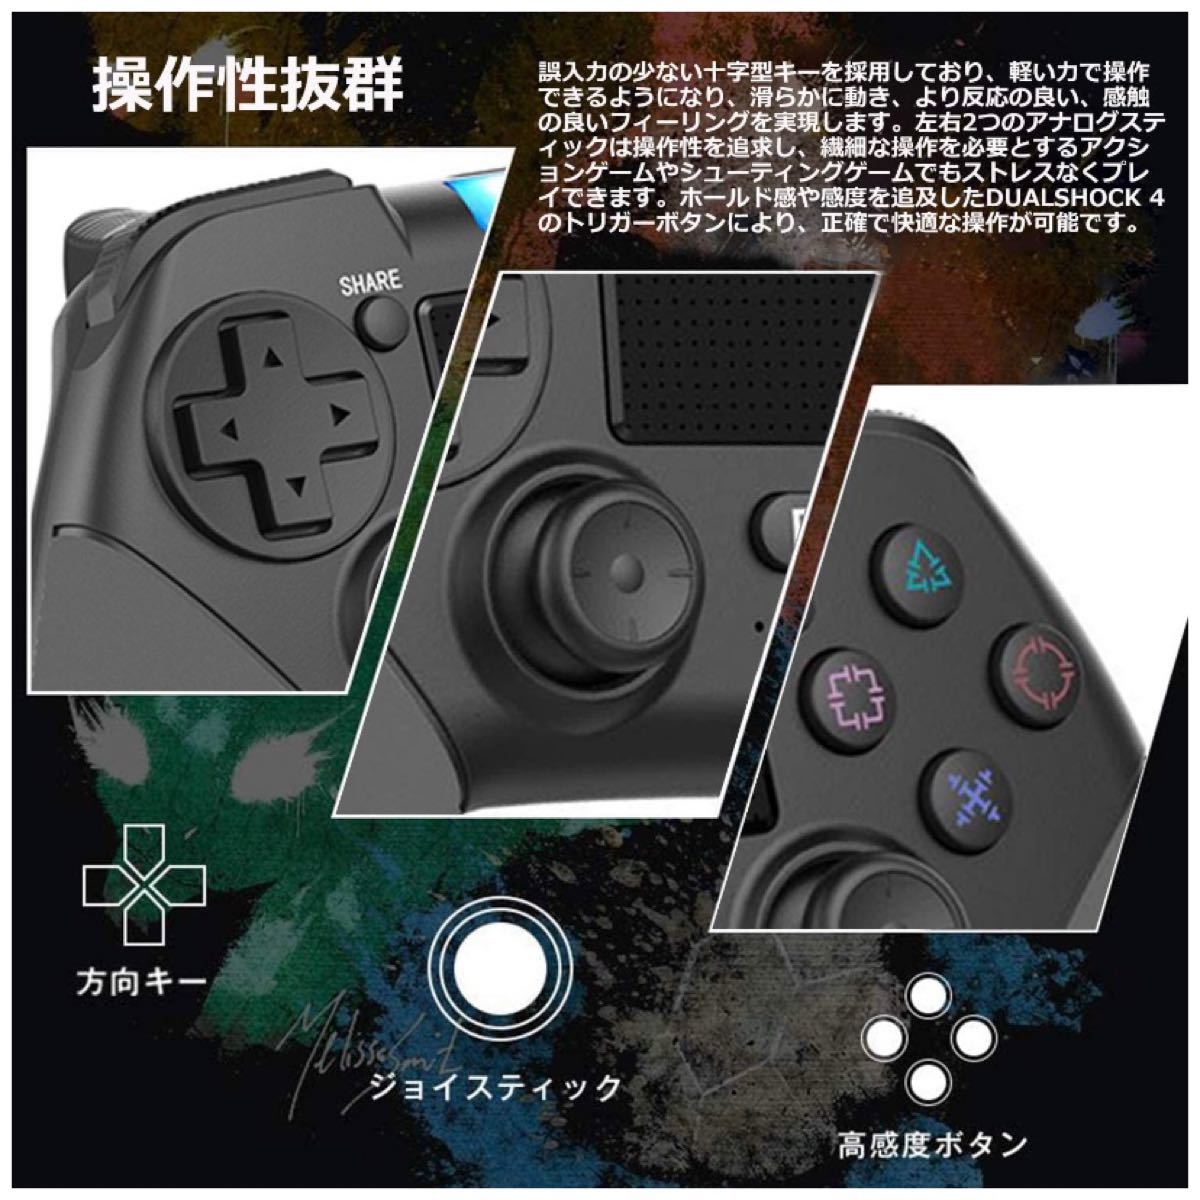 PS4コントローラー ワイヤレスコントローラー Bluetooth ゲームパッド